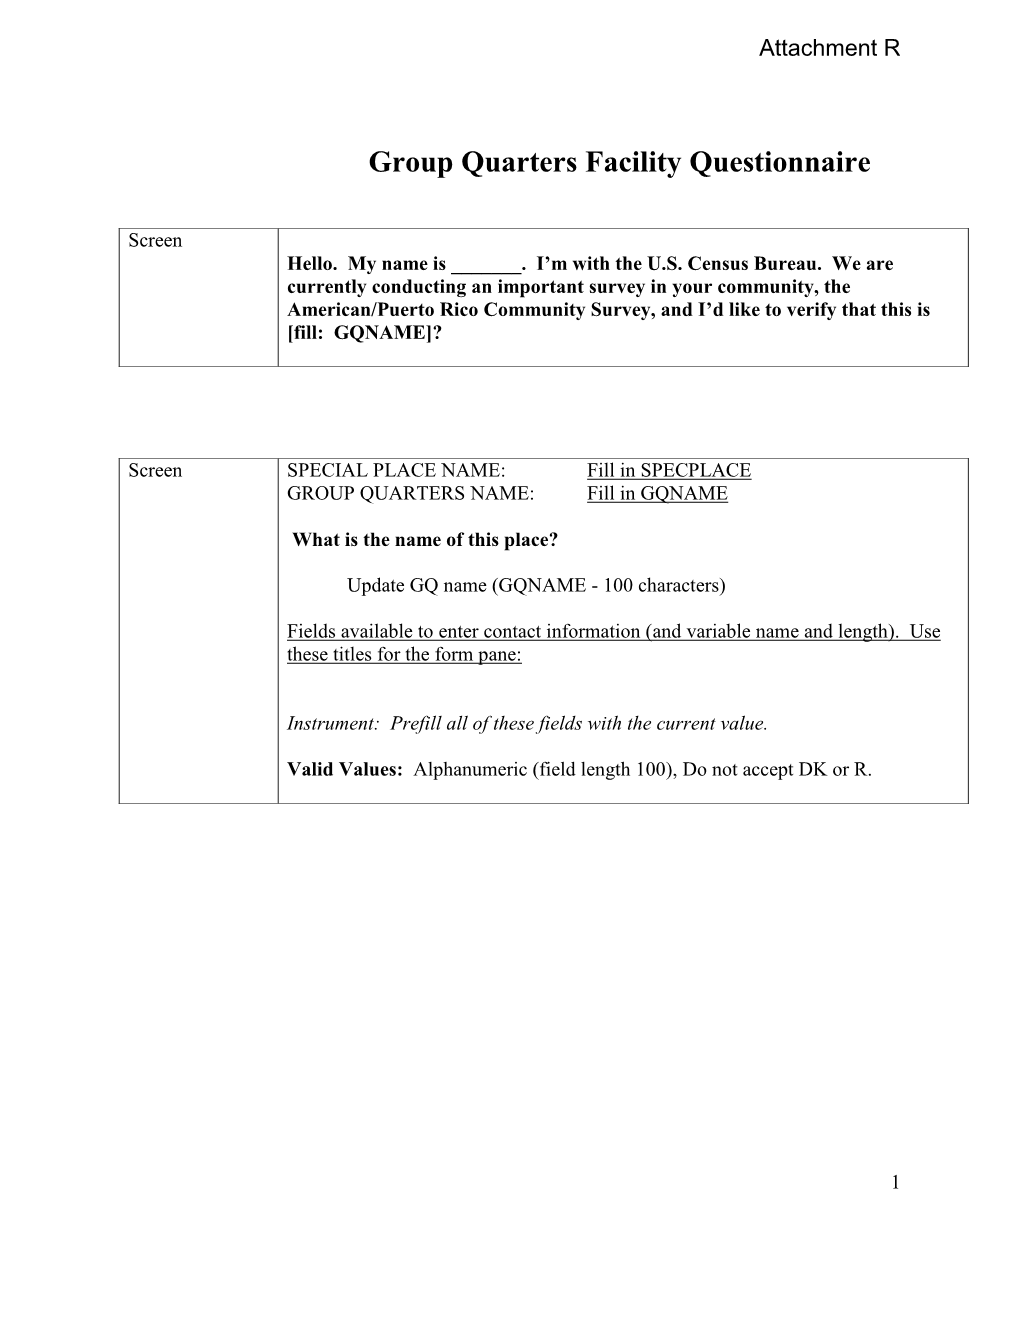 GQ Facilities Questionnaire